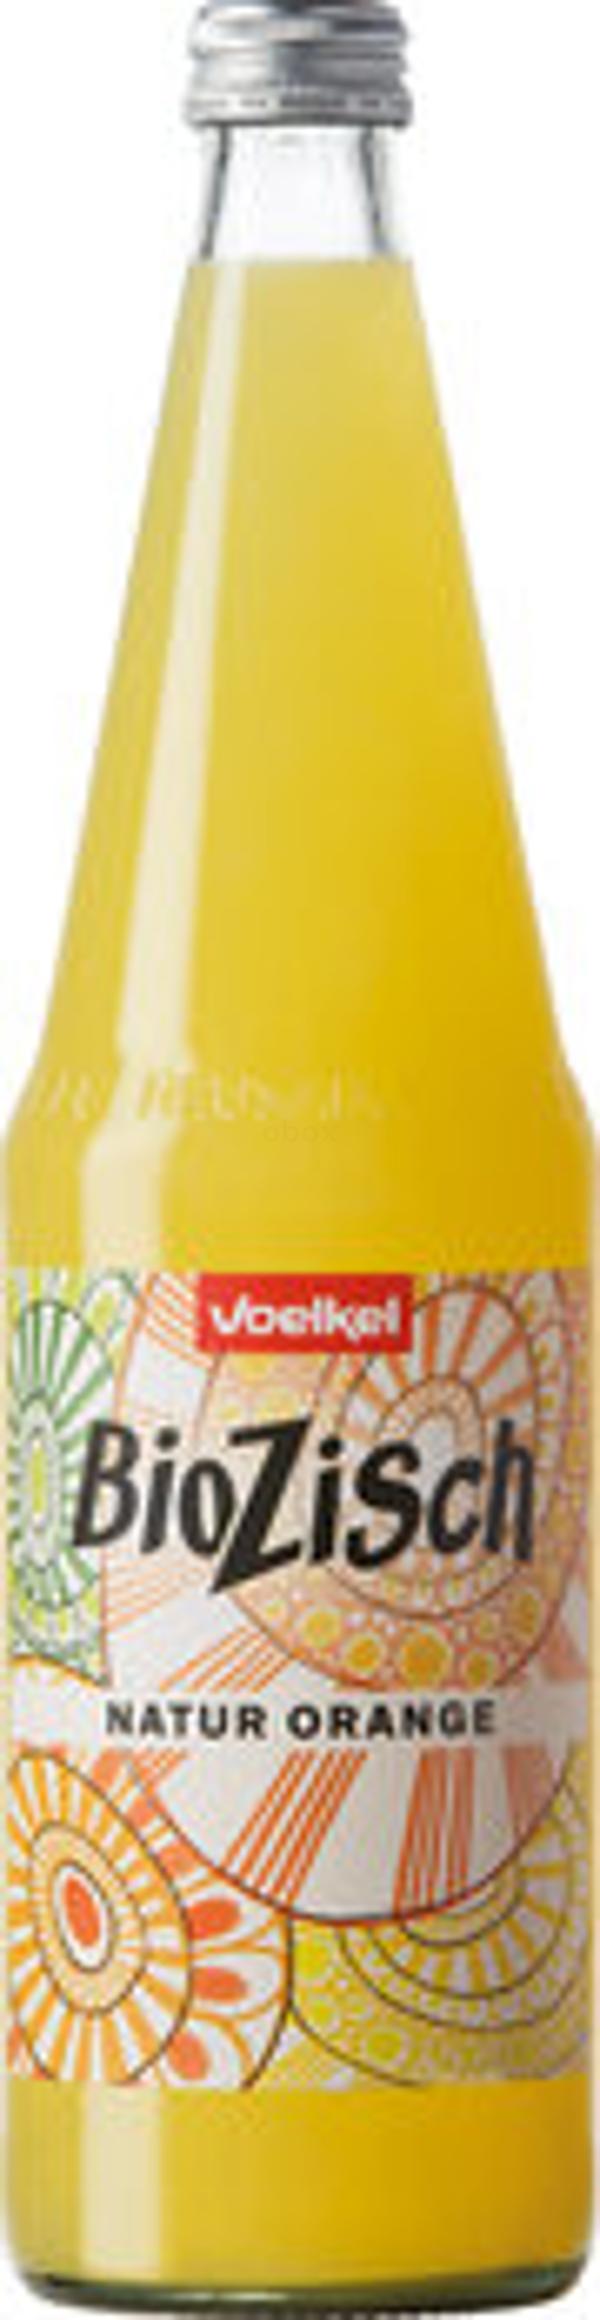 Produktfoto zu BioZisch Natur Orange, 0,7l